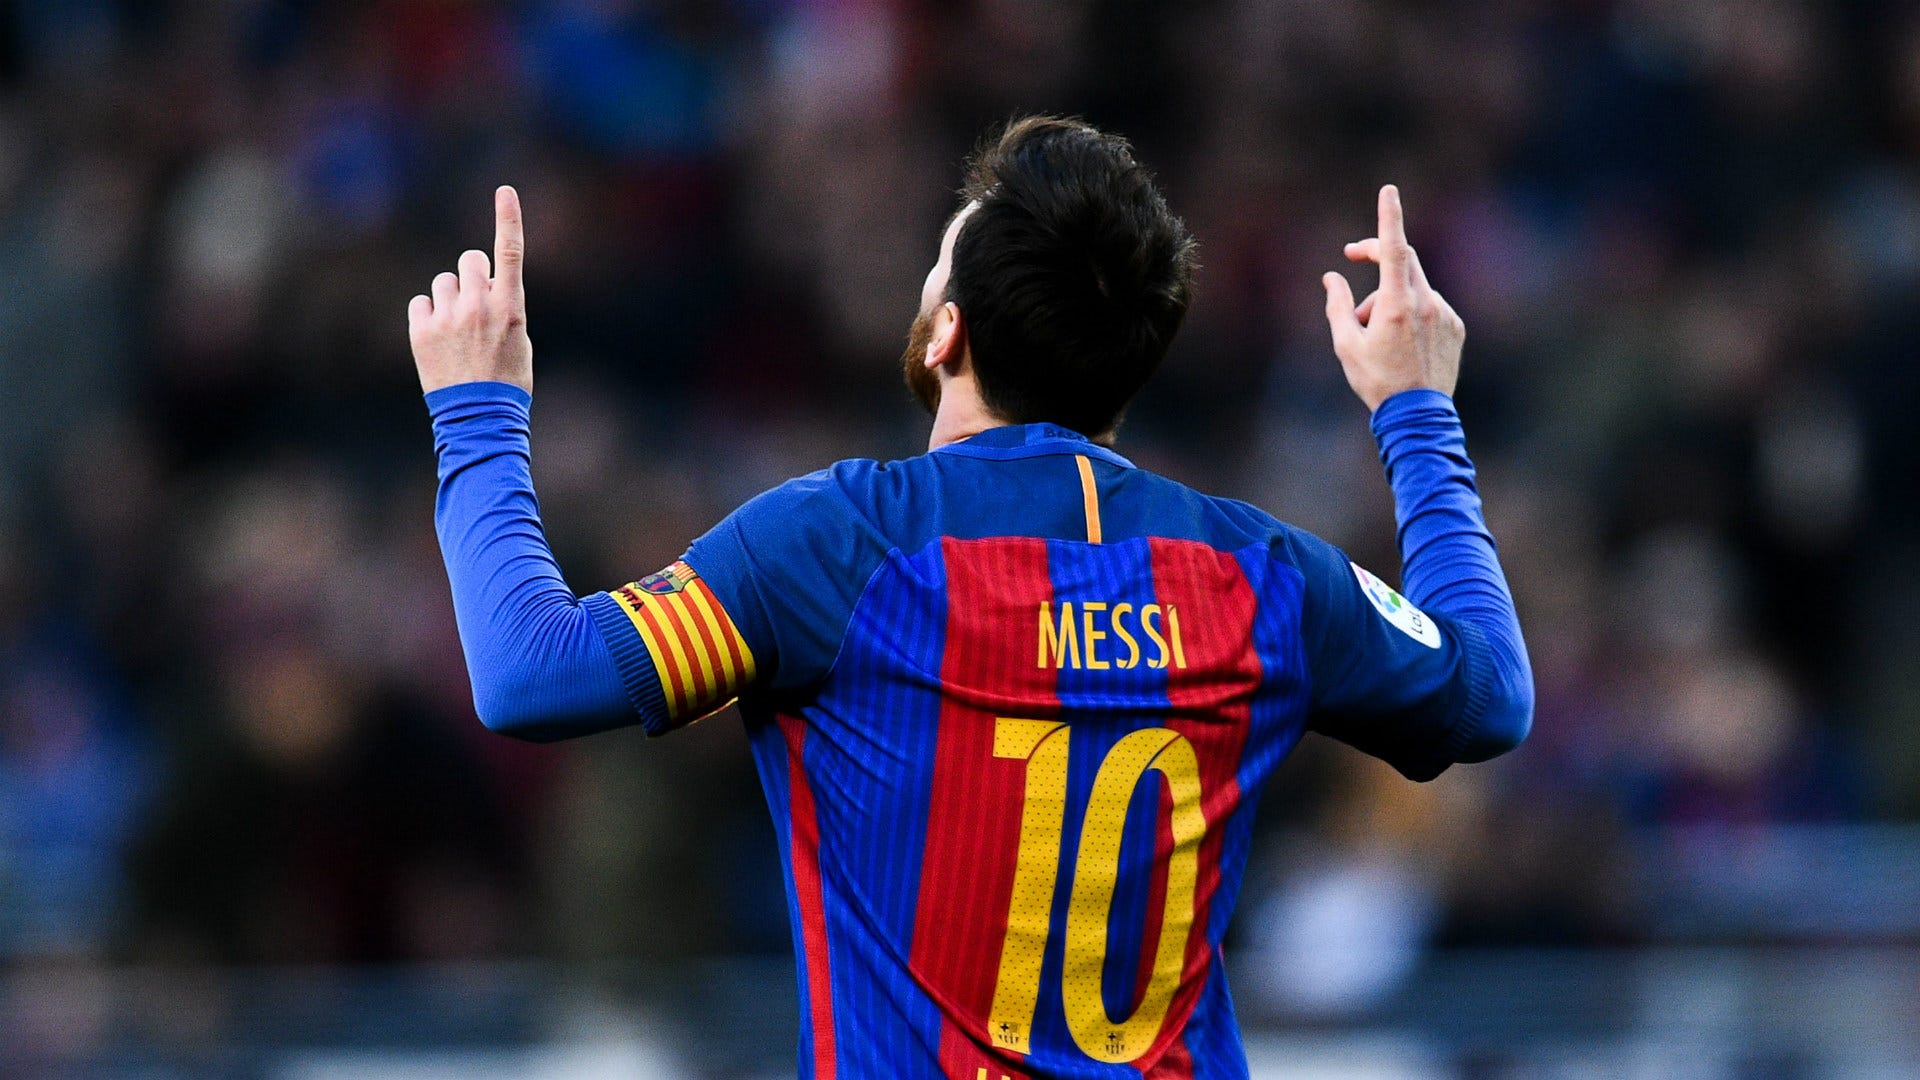 Ký hợp đồng: Việc ký hợp đồng là một sự kiện lịch sử đối với các đội tuyển và các cầu thủ. Xem như Messi ký kết một hợp đồng mới sẽ đem lại cảm xúc cực kỳ hấp dẫn cho các người hâm mộ. Hãy xem những khoảnh khắc dành cho một trong những vận động viên vĩ đại nhất trong lịch sử.